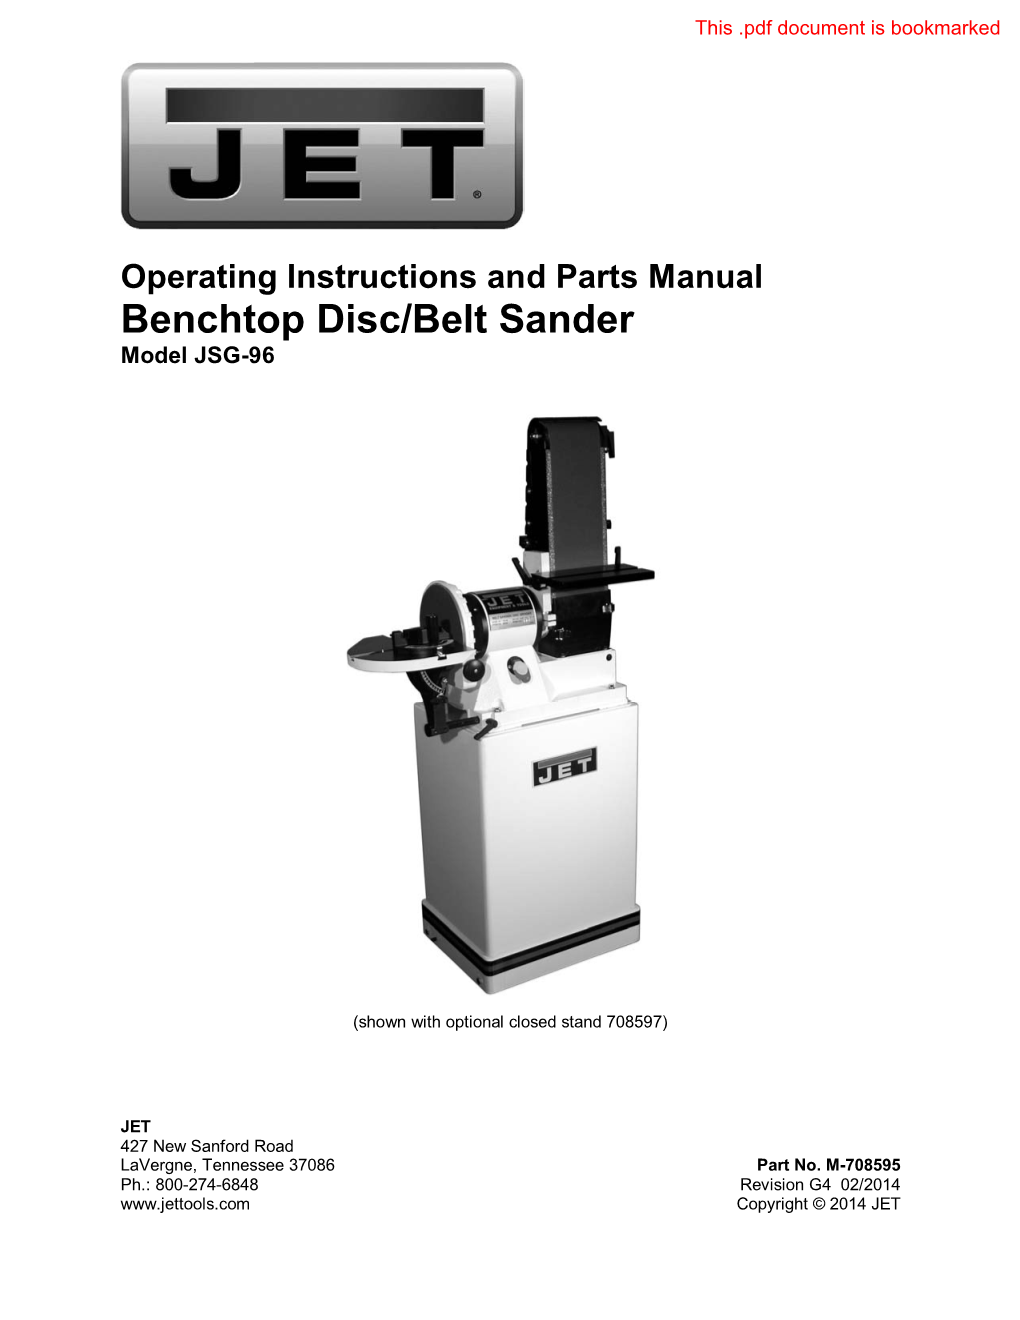 Benchtop Disc/Belt Sander Model JSG-96